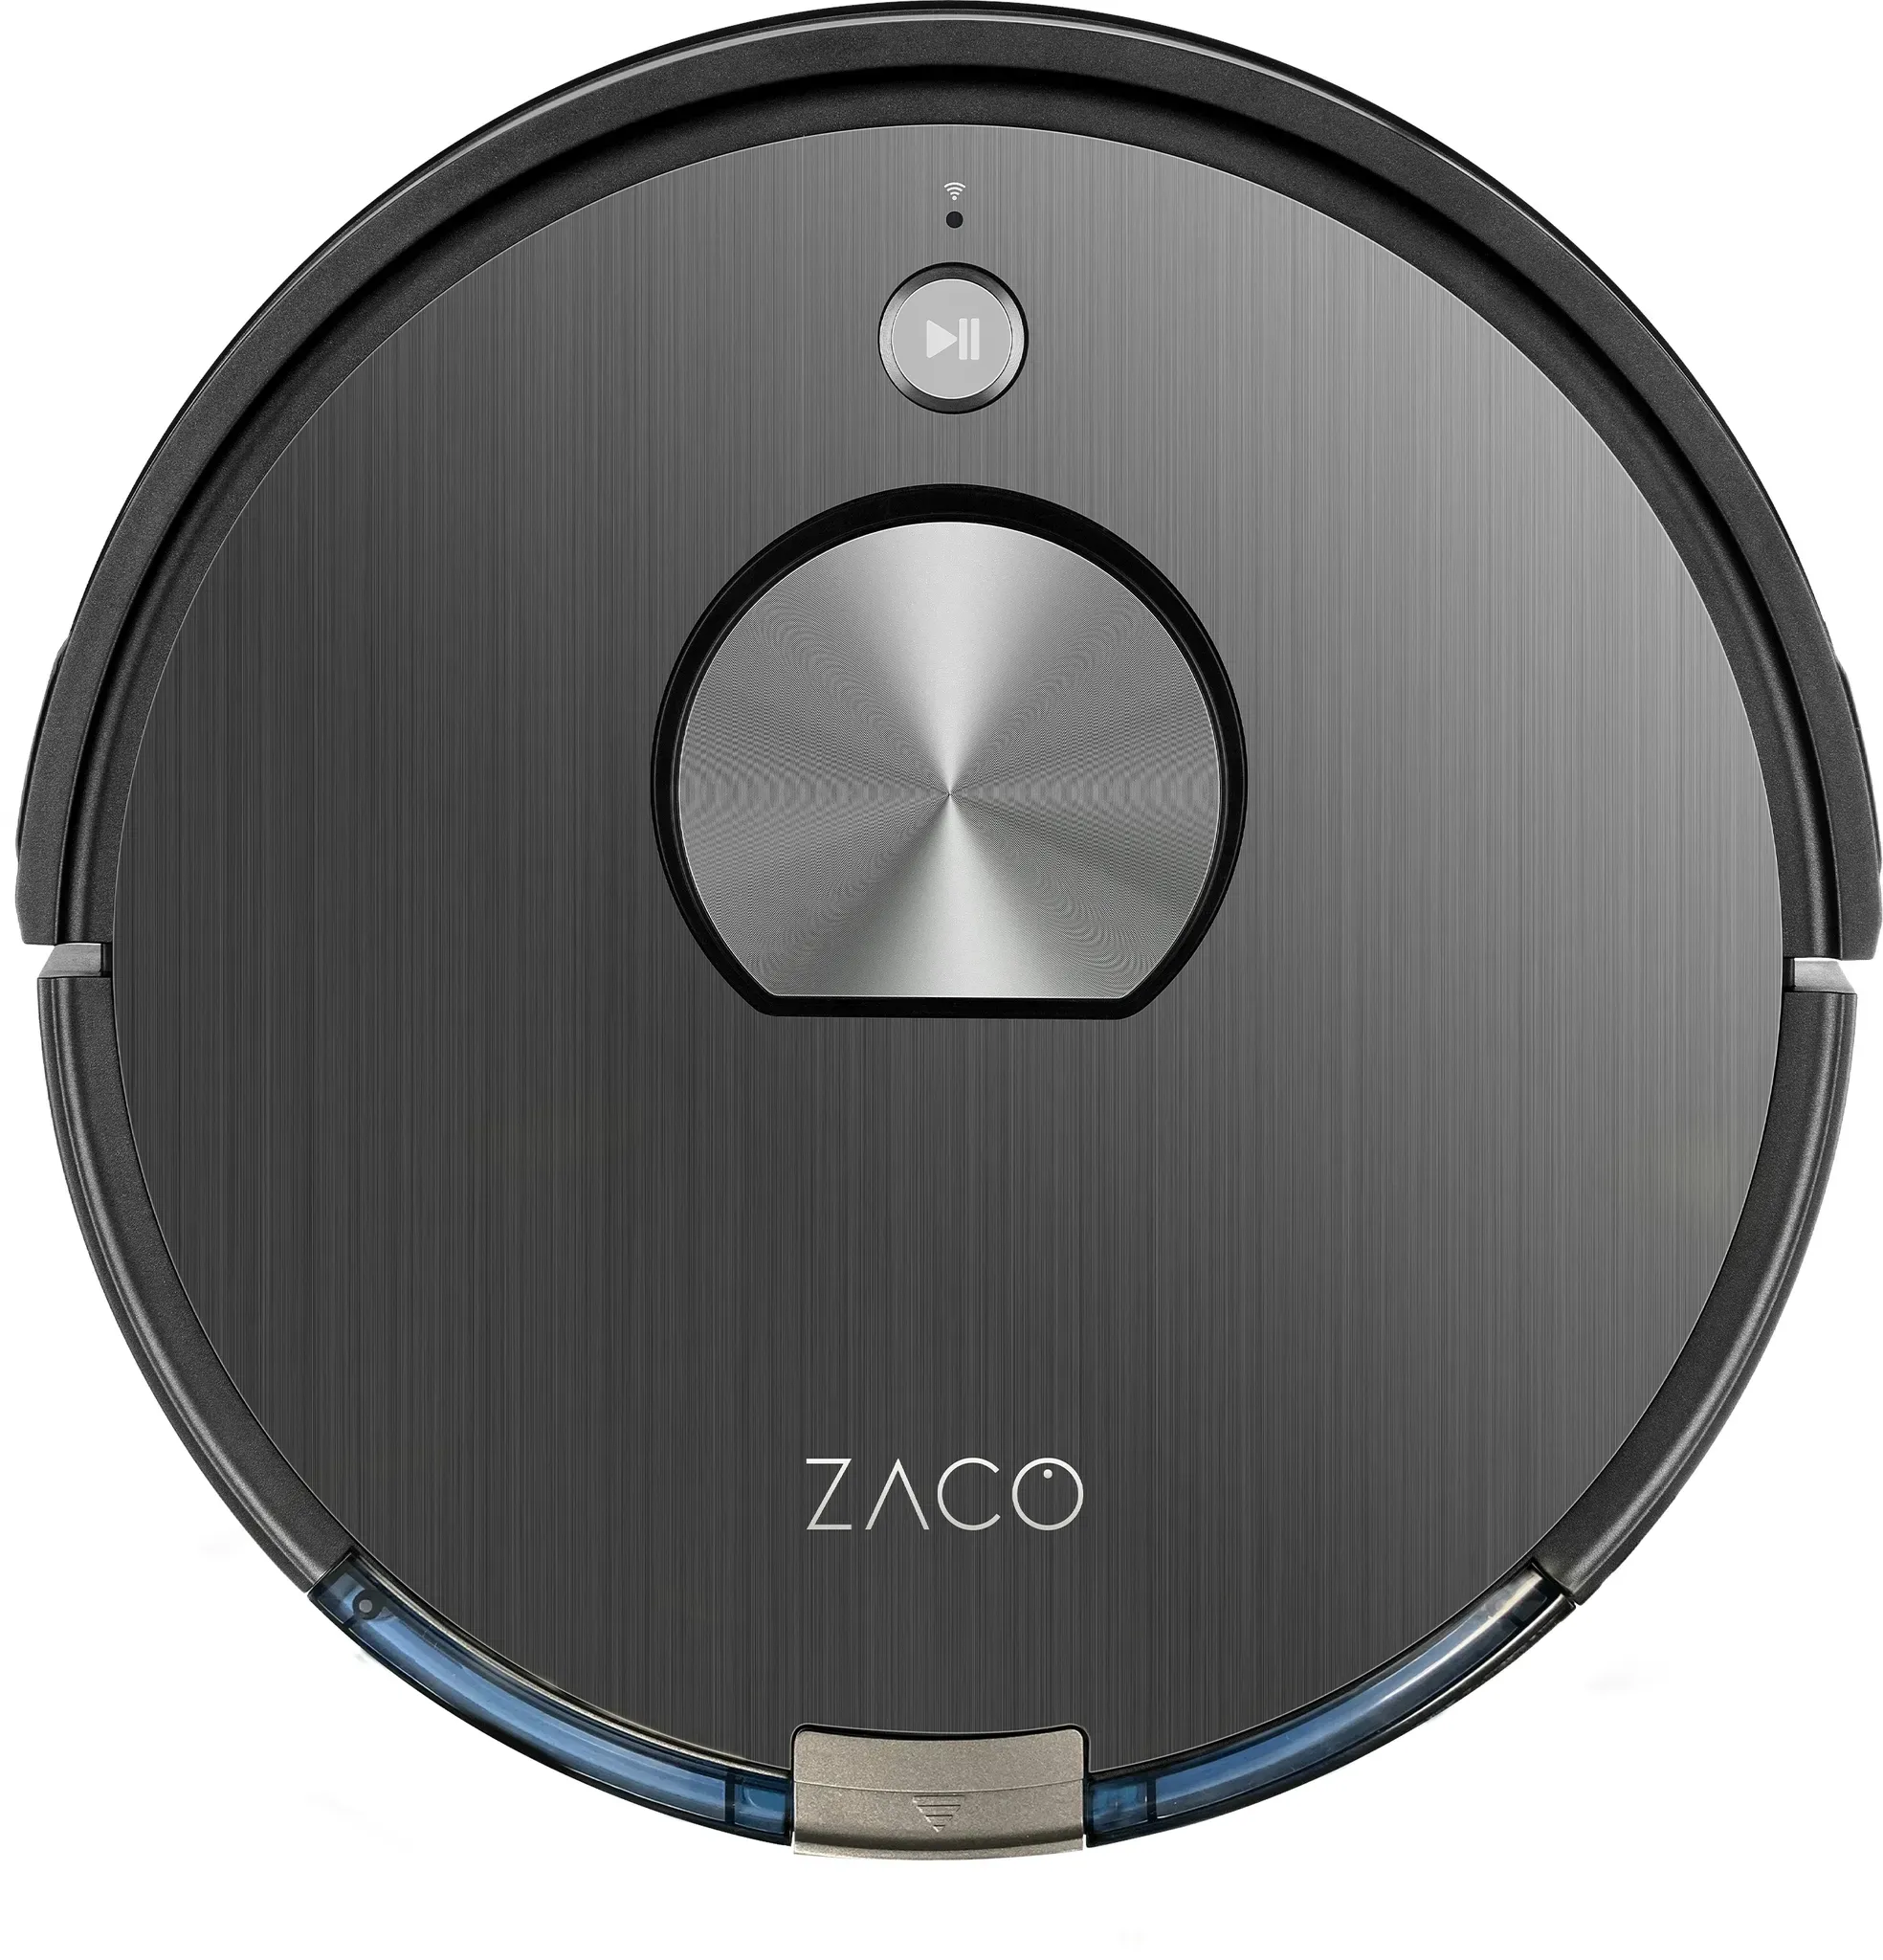 ZACO A10 Saugroboter mit Wischfunktion, 360° Laser-Navigation, App, Alexa & Google Home Steuerung, Smart Mapping, für Hartböden & Teppich, bis 2 Std